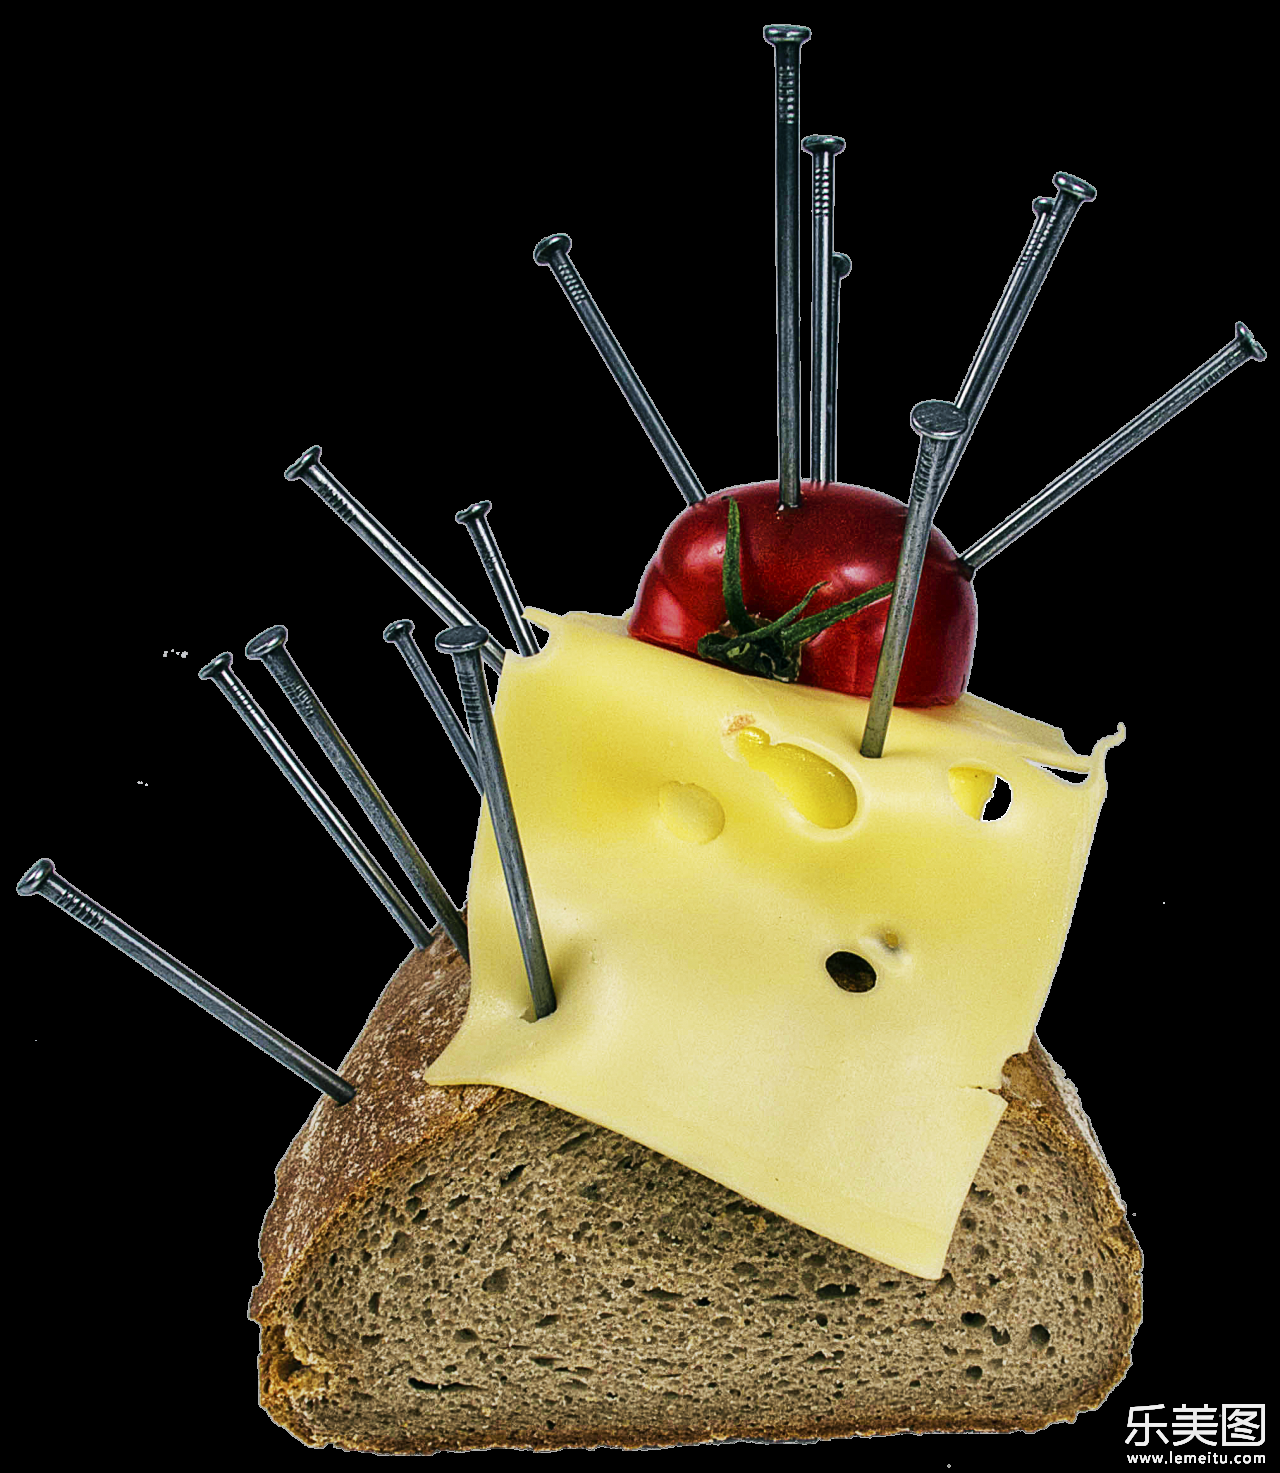 白色背景插满钉子的面包和奶酪美食摄影